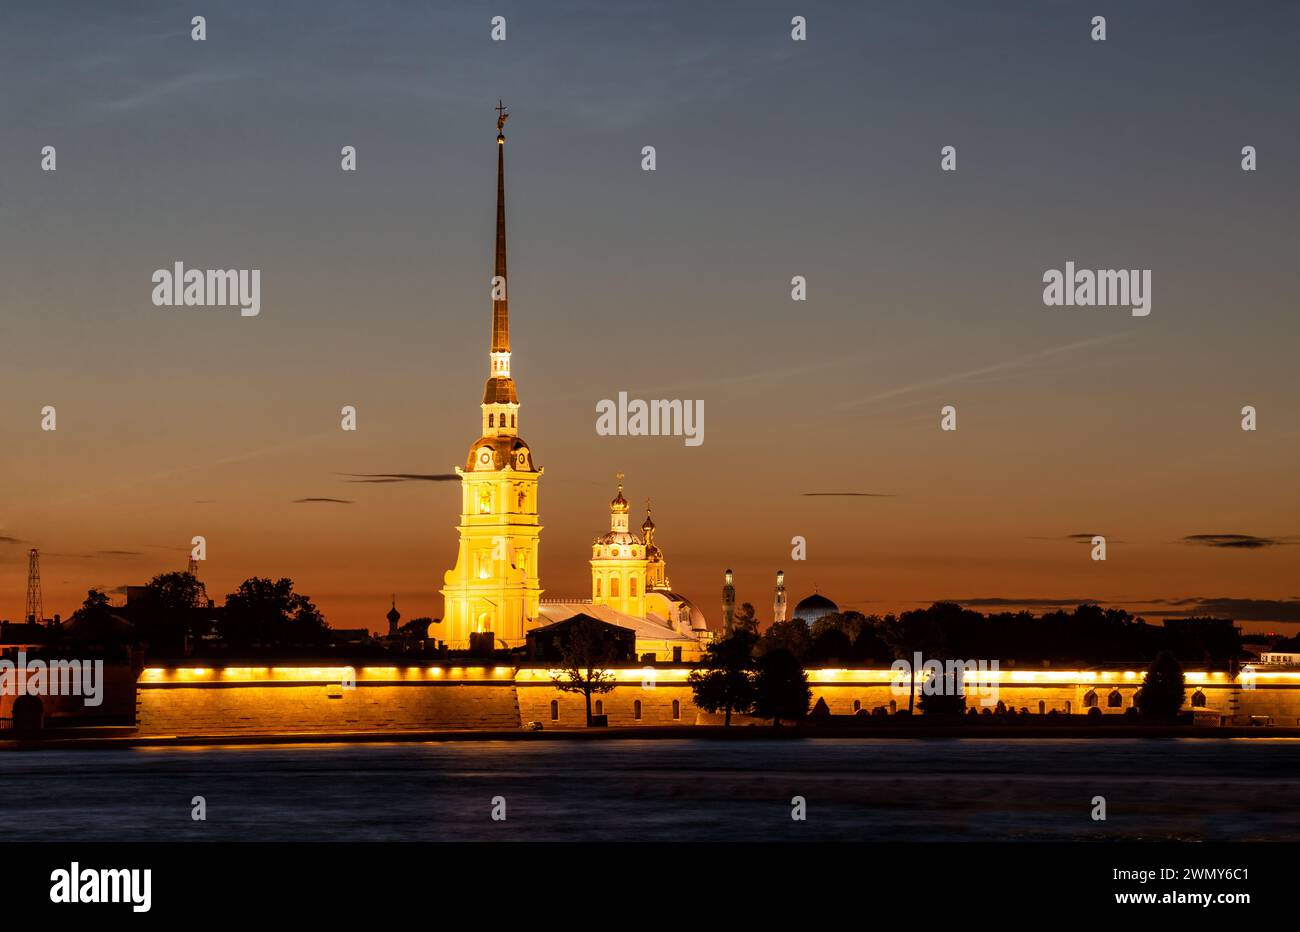 Weiße Nächte in St. Petersburg. Beleuchtete Peter-und-Paul-Festung vor dem Hintergrund des Sonnenuntergangs Stockfoto